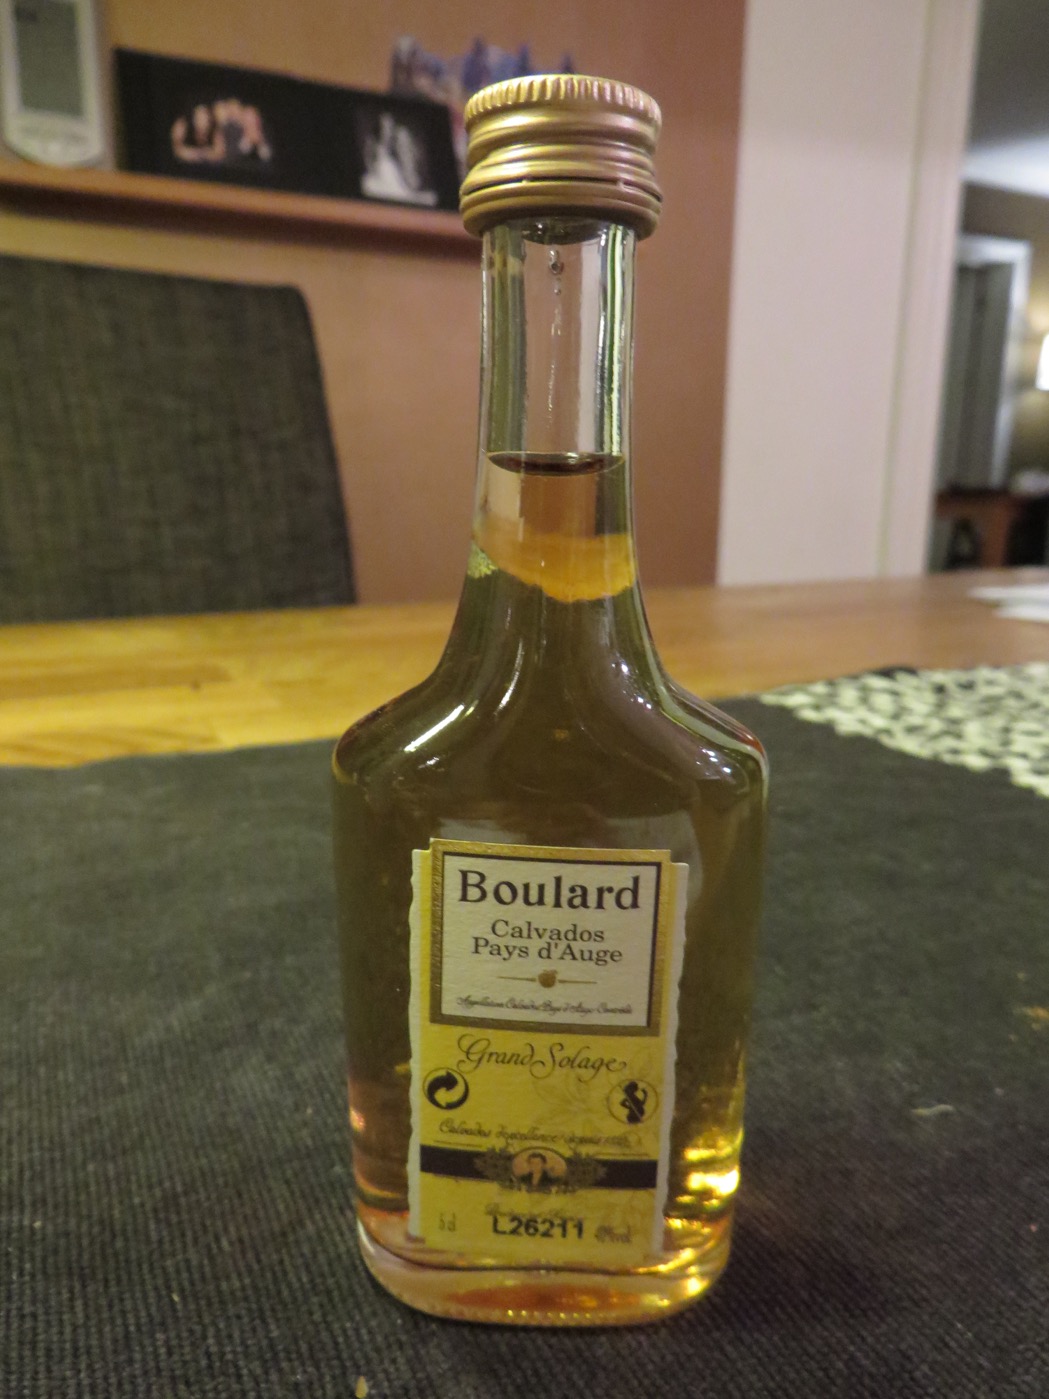 Boulard Calvados Grand Solage